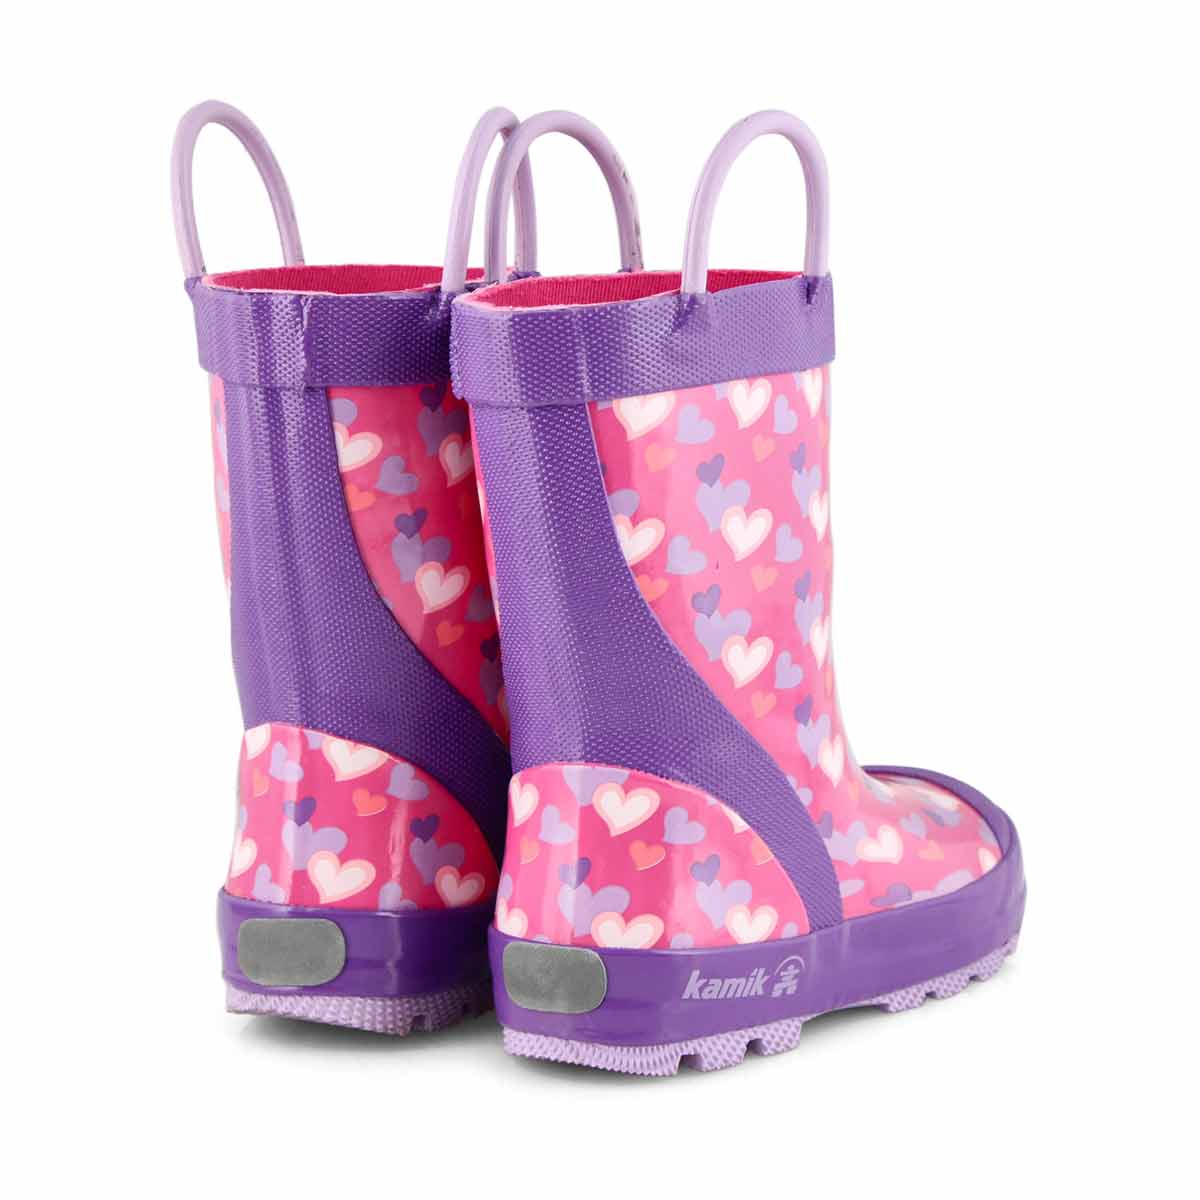 Girls' Lovely Rain boot - Pink